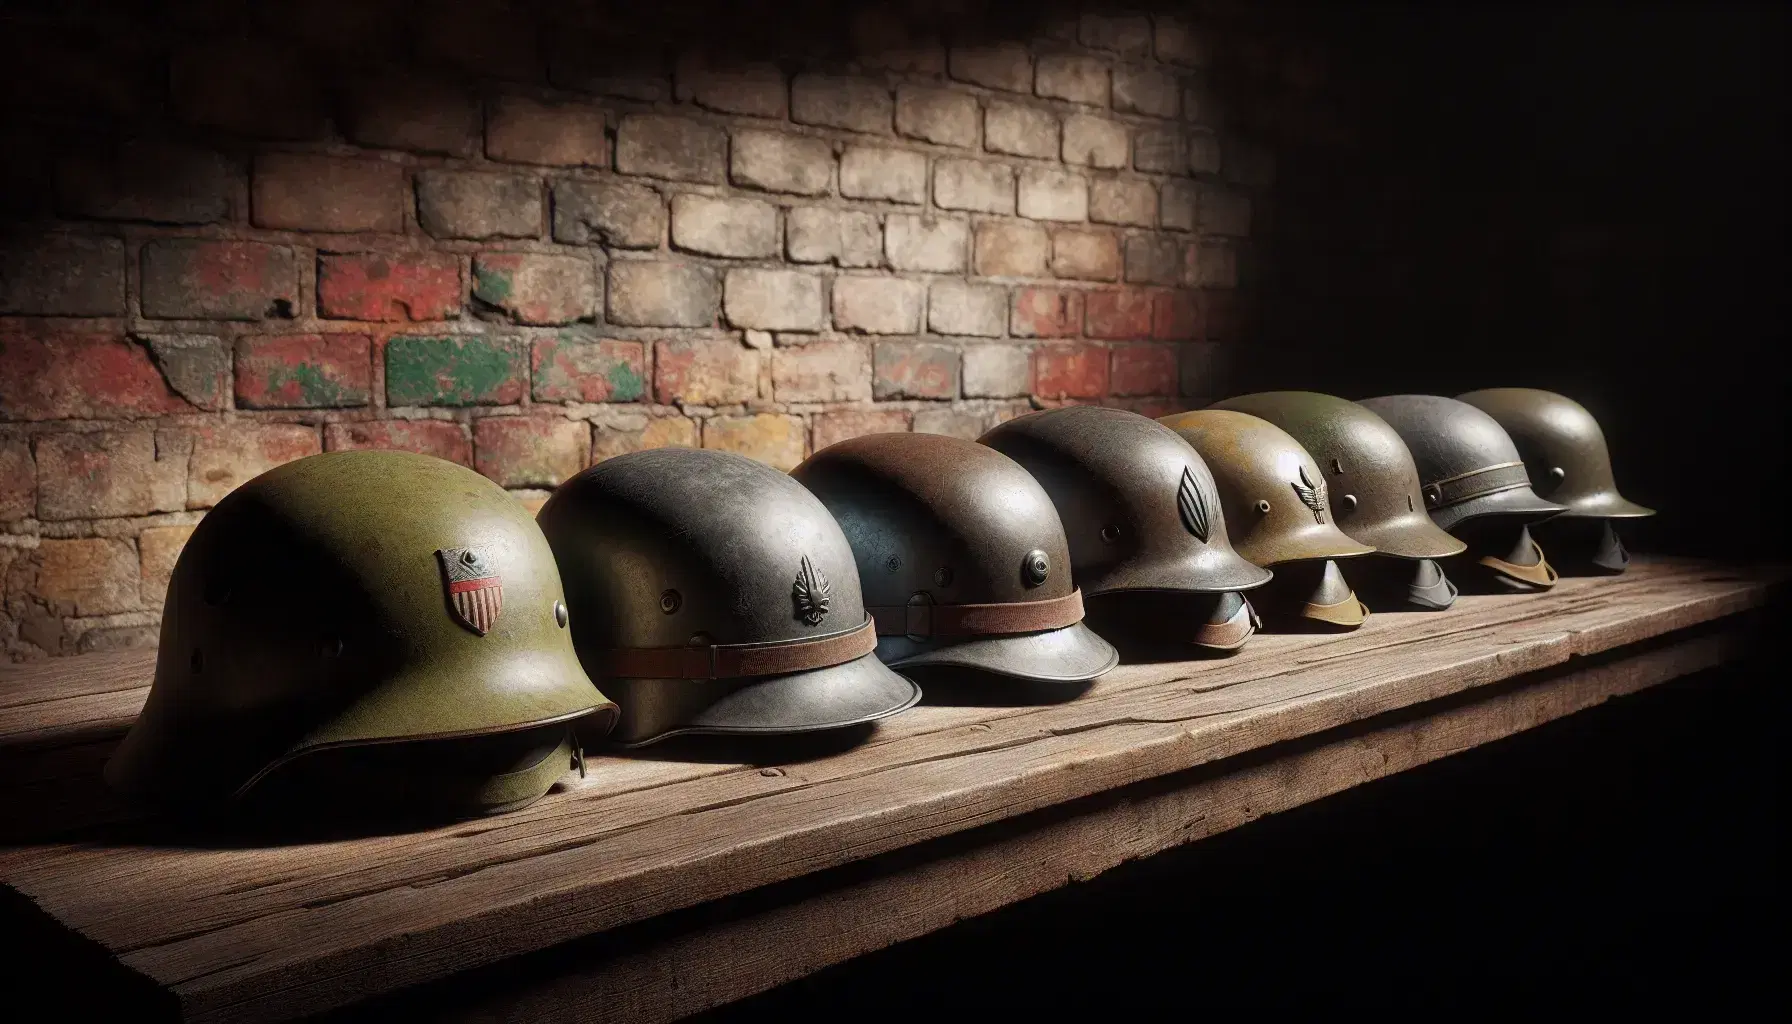 Fila de cascos militares de la Segunda Guerra Mundial sobre superficie de madera, con variados diseños y colores, mostrando uso y desgaste, ante un fondo de ladrillo envejecido.